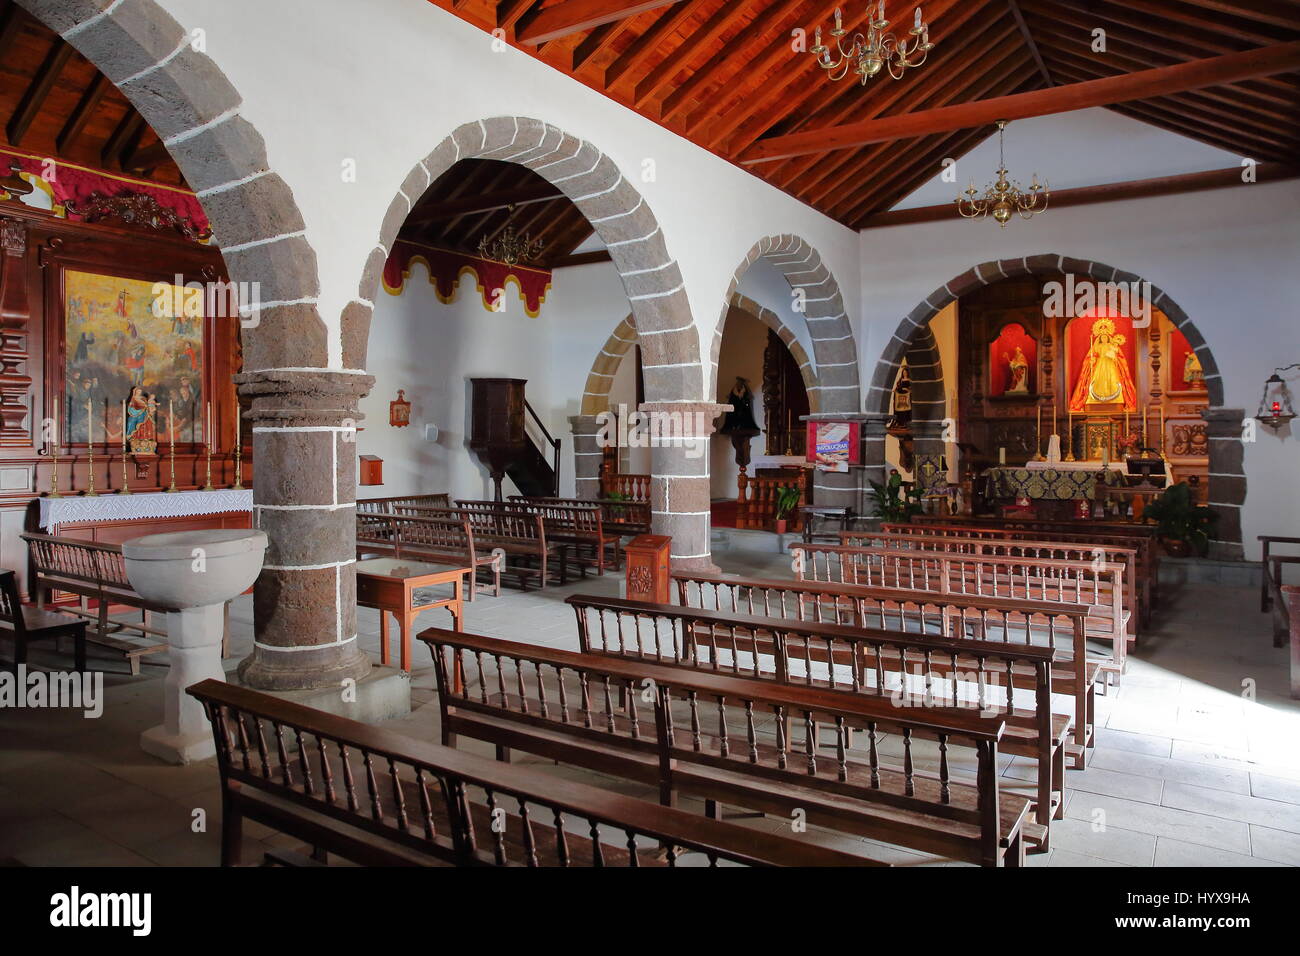 CHIPUDE, LA GOMERA, SPAIN - MARCH 24, 2017: The interior of the church of Chipude (la Iglesia de la Virgen de la Candelaria) Stock Photo